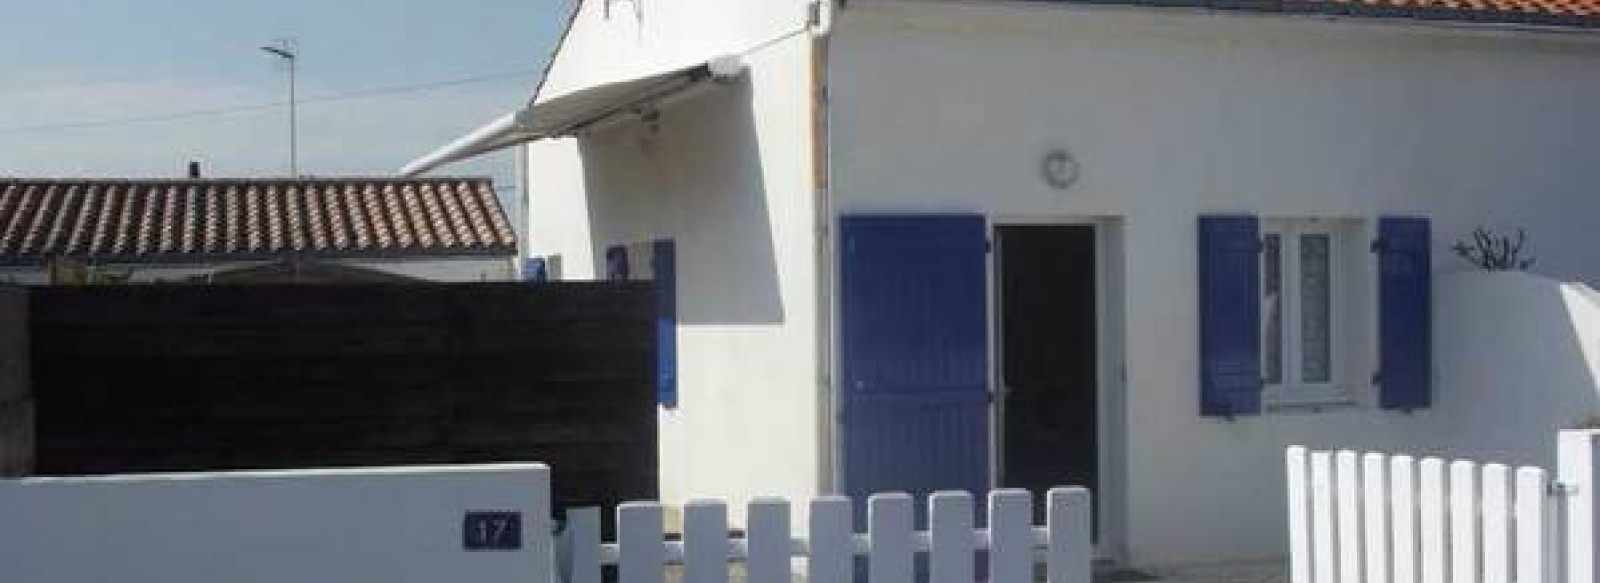 Maison mitoyenne avec terrasse ensoleillee sur l'Ile de Noirmoutier